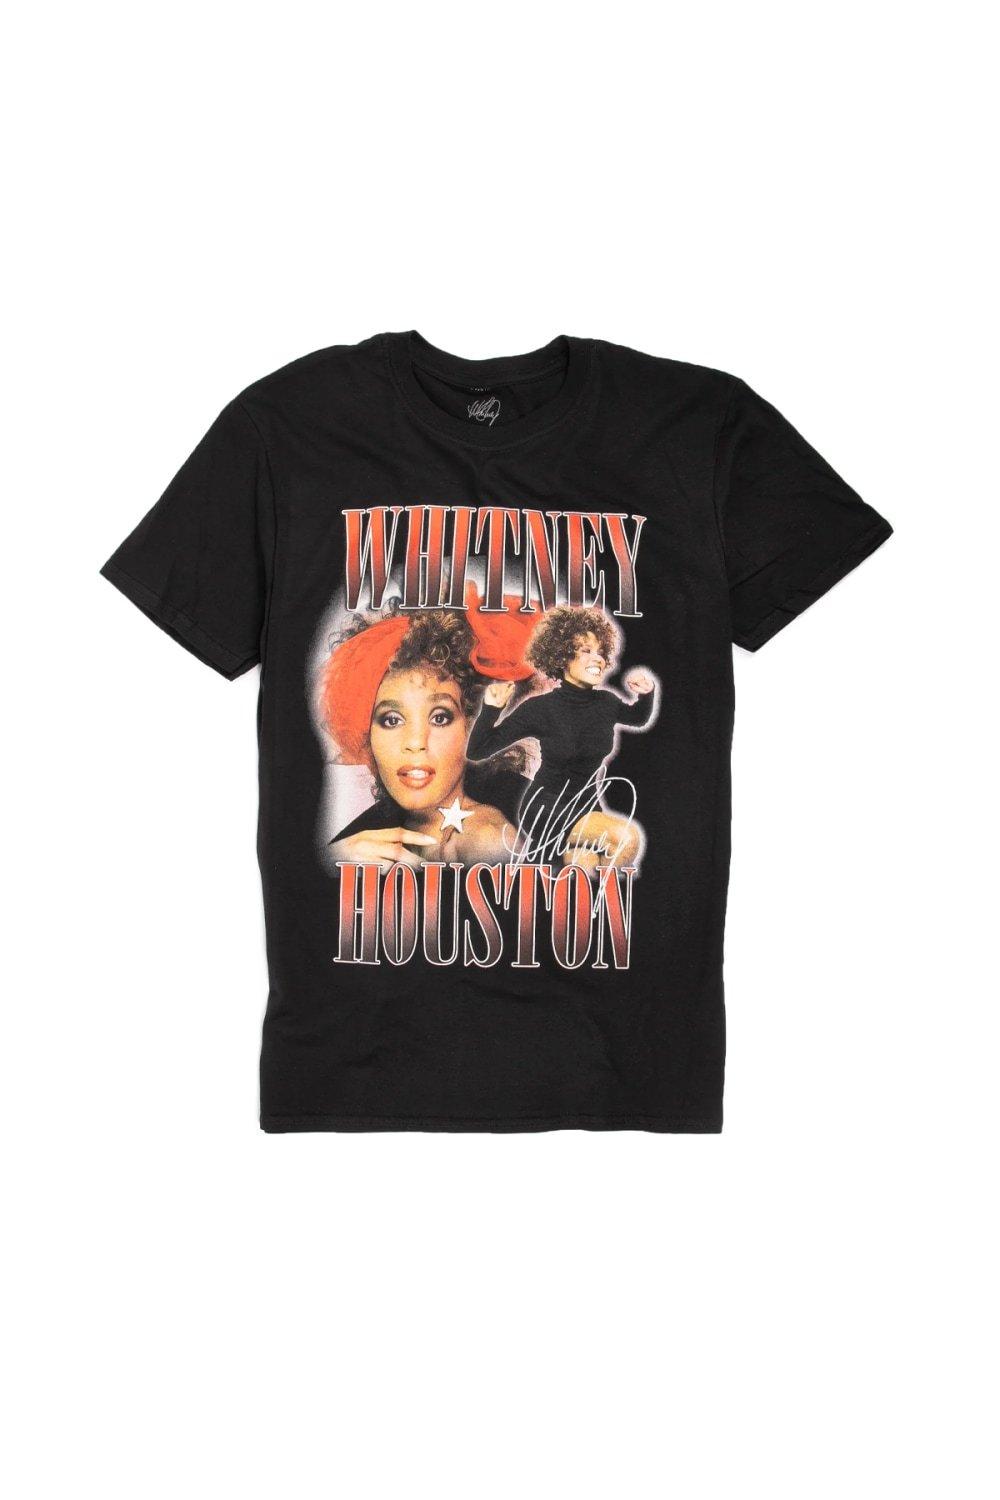 Хлопковая футболка в стиле 90-х годов Whitney Houston, черный 3x5 aston martins flag полиэстер печатная фотография для украшения